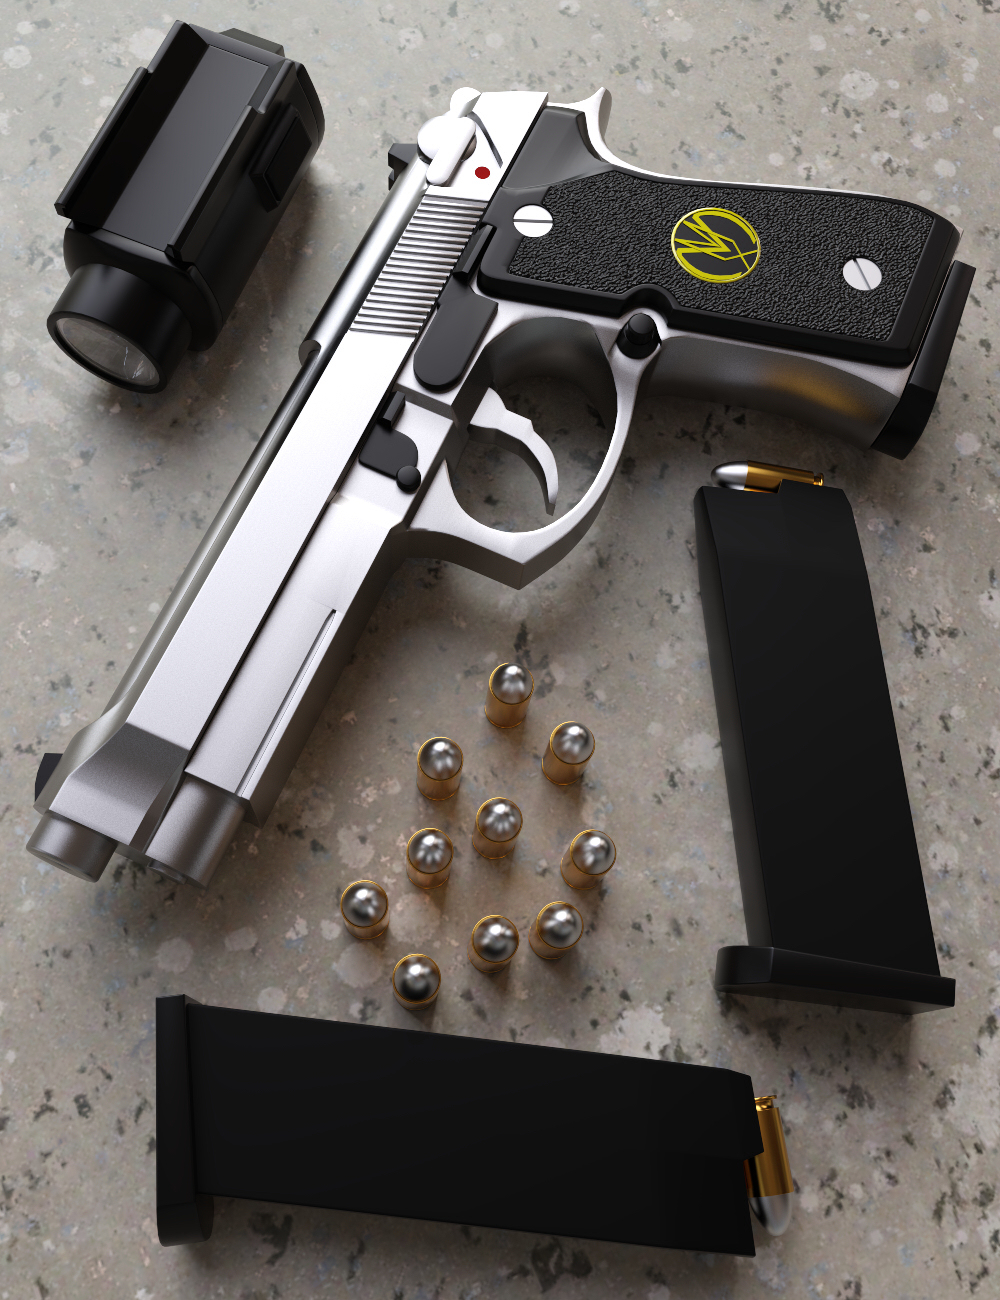 MMX92 9MM Pistol by: Mattymanx, 3D Models by Daz 3D